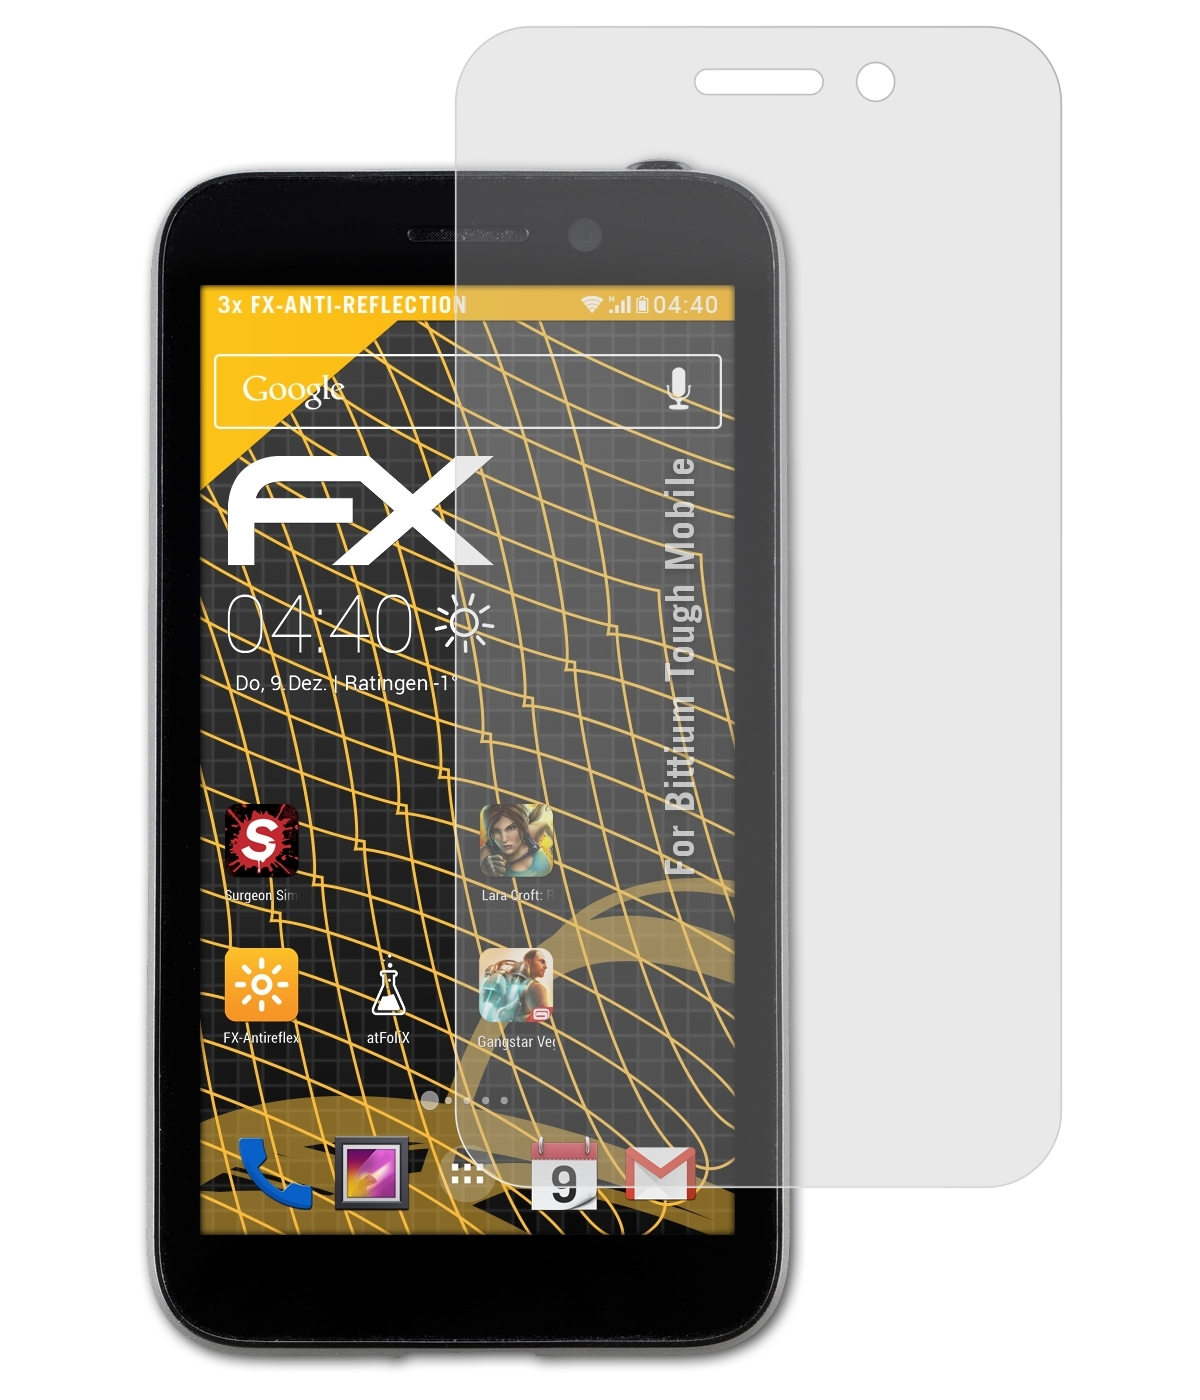 ATFOLIX 3x FX-Antireflex Displayschutz(für Bittium Tough Mobile)